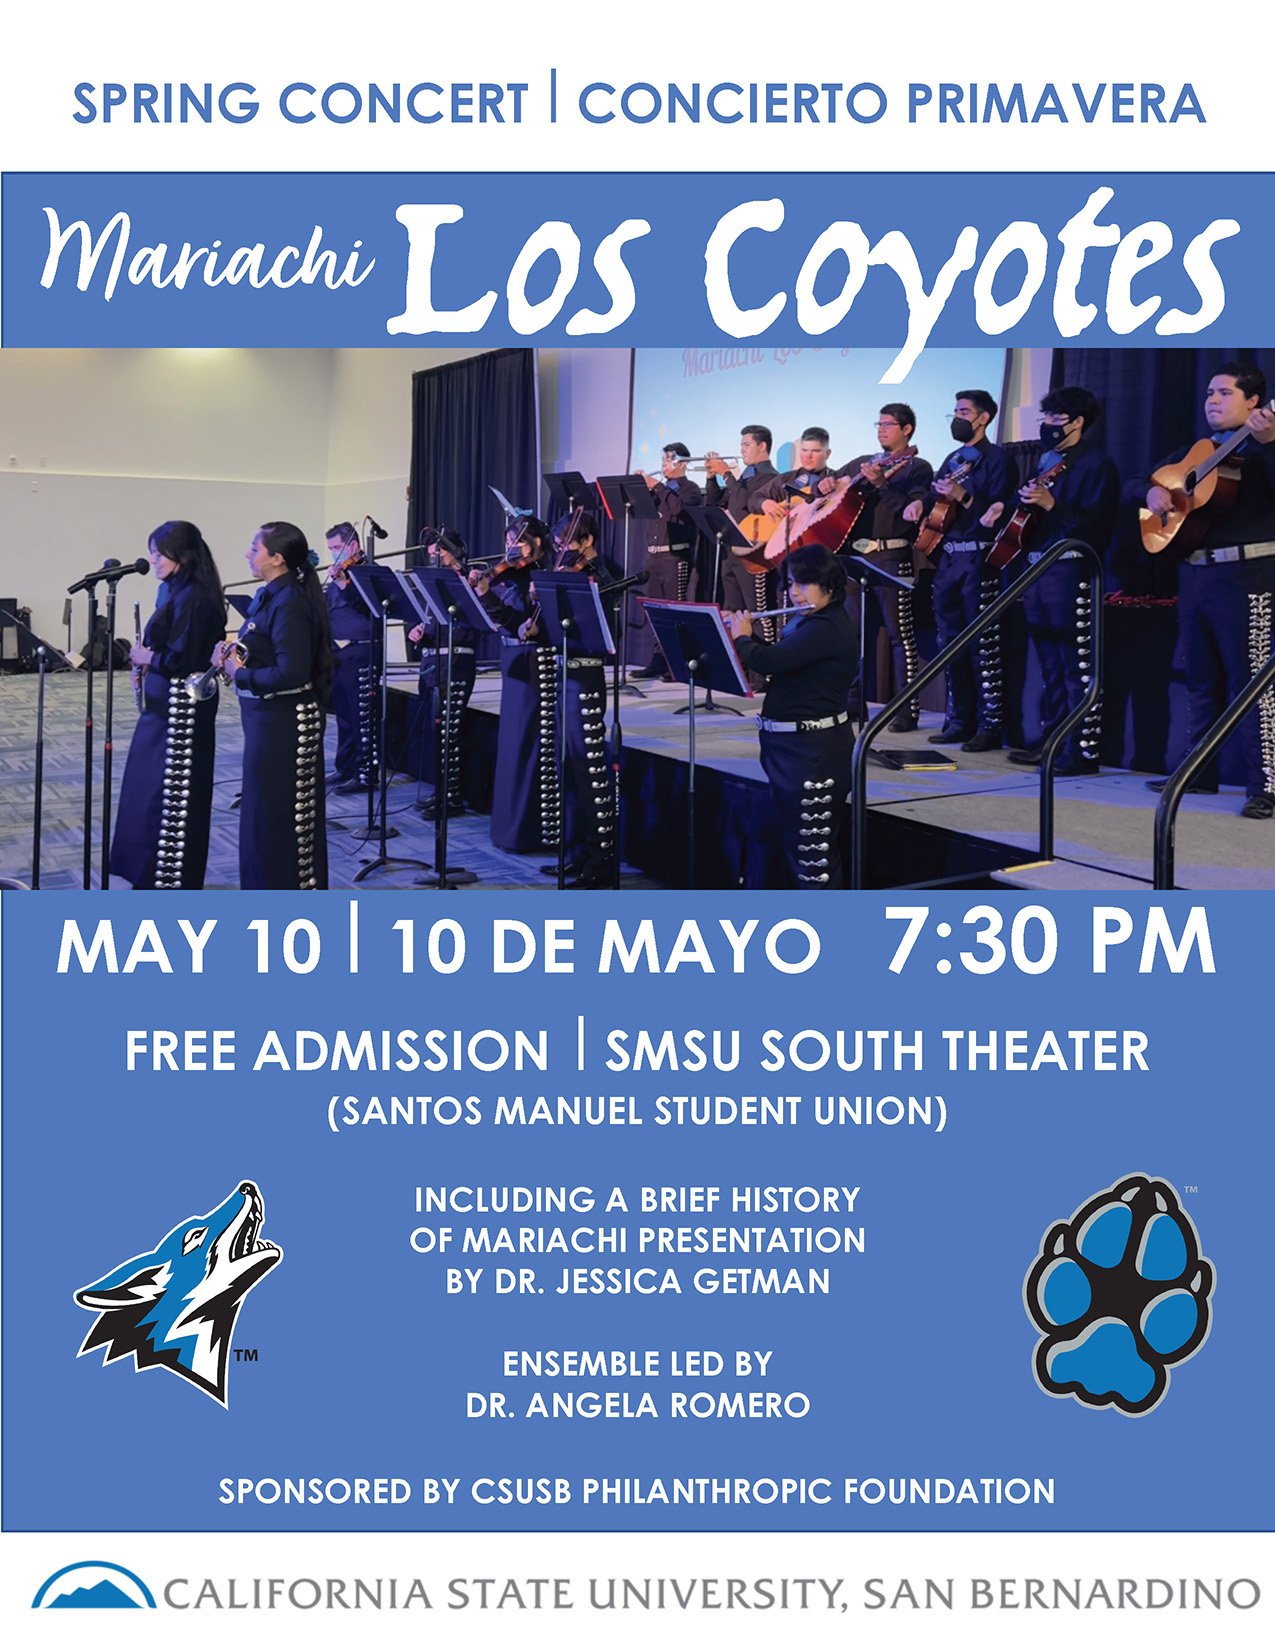 Mariachi Los Coyotes concert flier